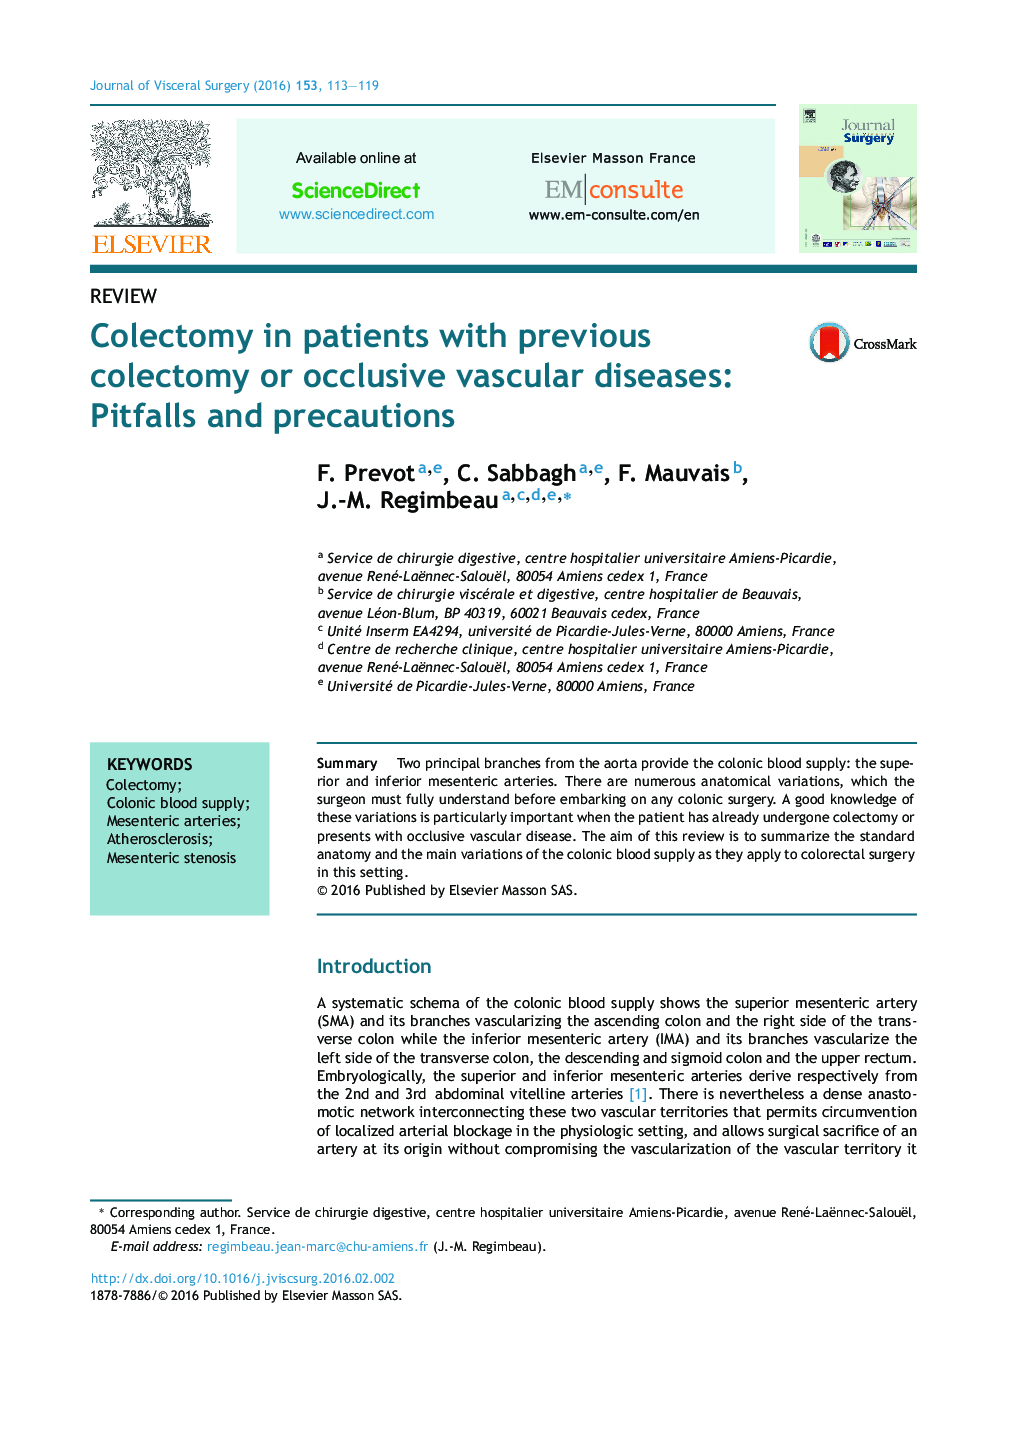 بررسی کولکتومی در بیماران مبتلا به کولکتومی قبلی یا بیماری های مسدود کننده عروقی: مشکلات و اقدامات احتیاطی 